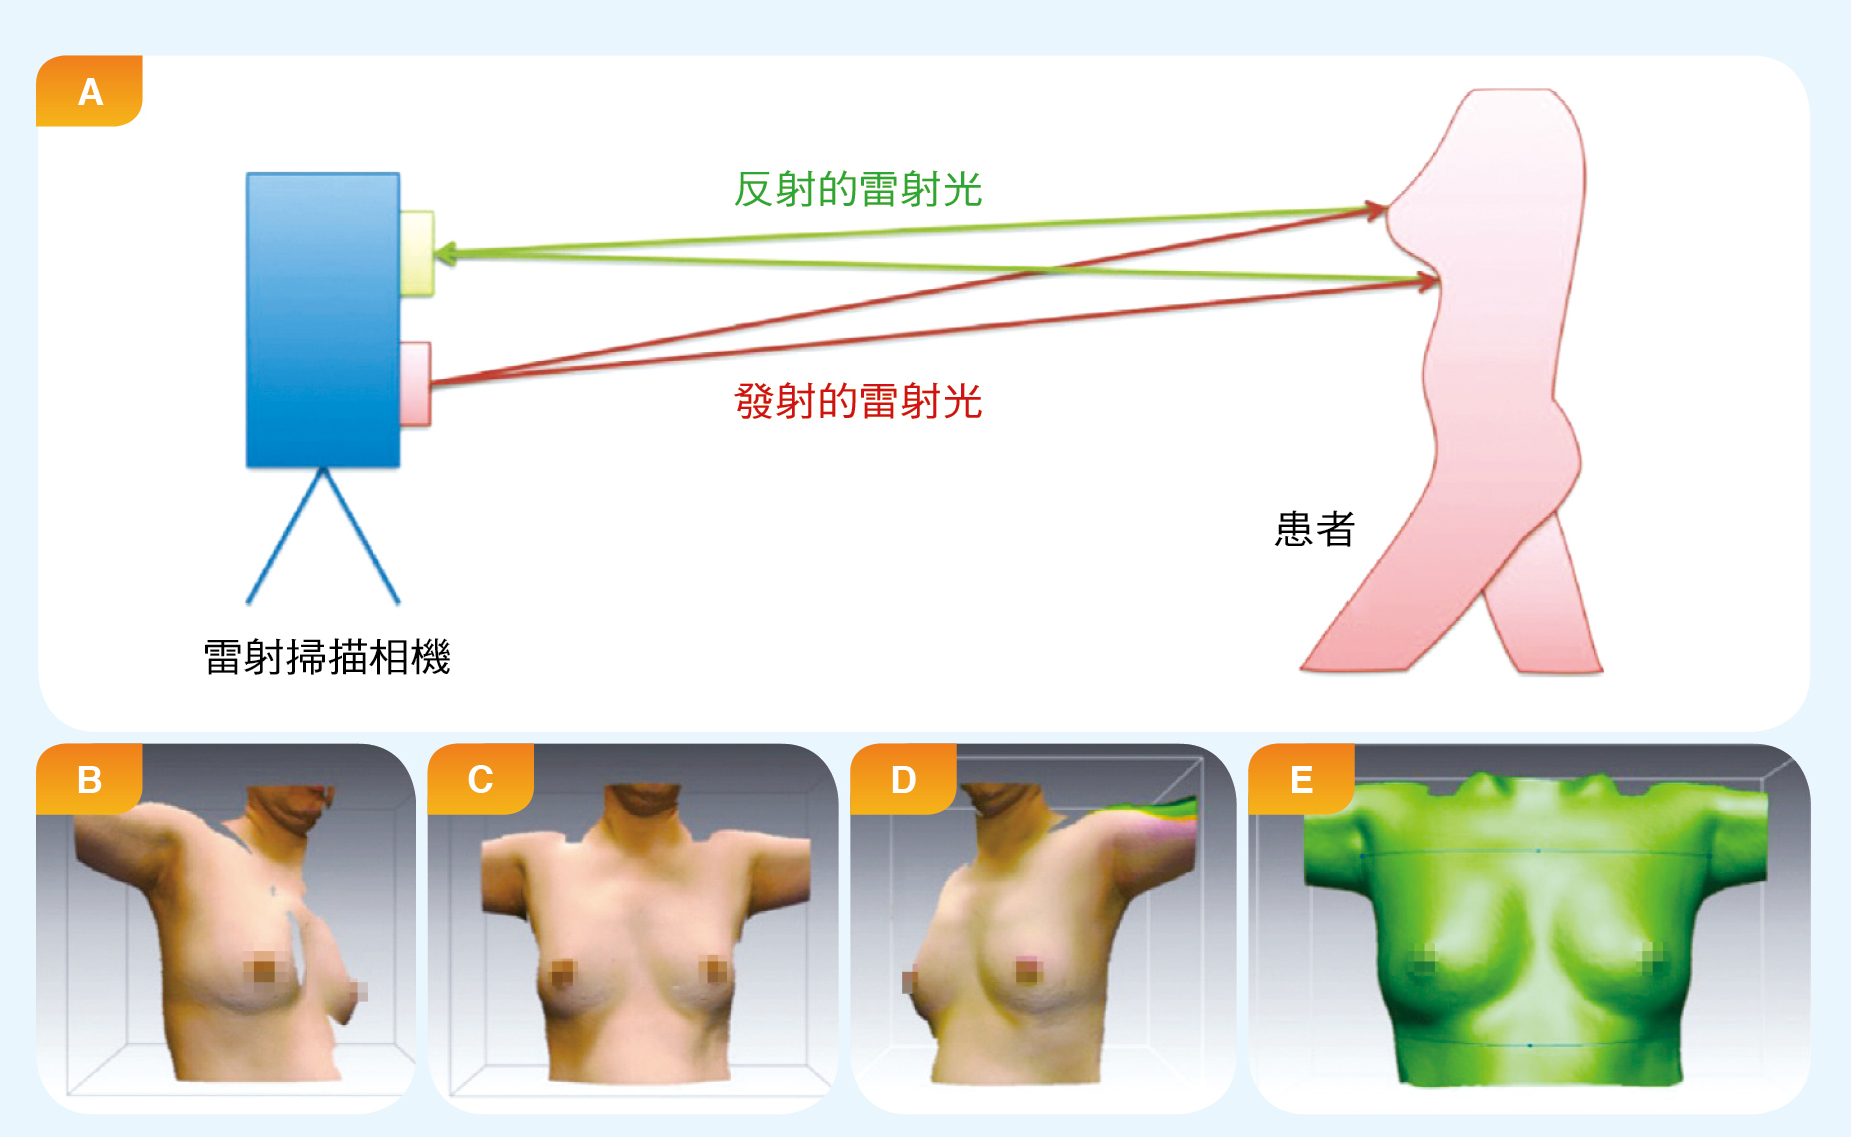 圖A顯示以雷射掃描相機掃描患者取得其乳房與周邊胸廓資料。圖B～D分別是患者正對雷射波束不同角度（－30°, 0°, 30°）的輸出影像圖。圖E是把圖B～D的資料合併後，以電腦軟體建立的患者數位模型表面圖。